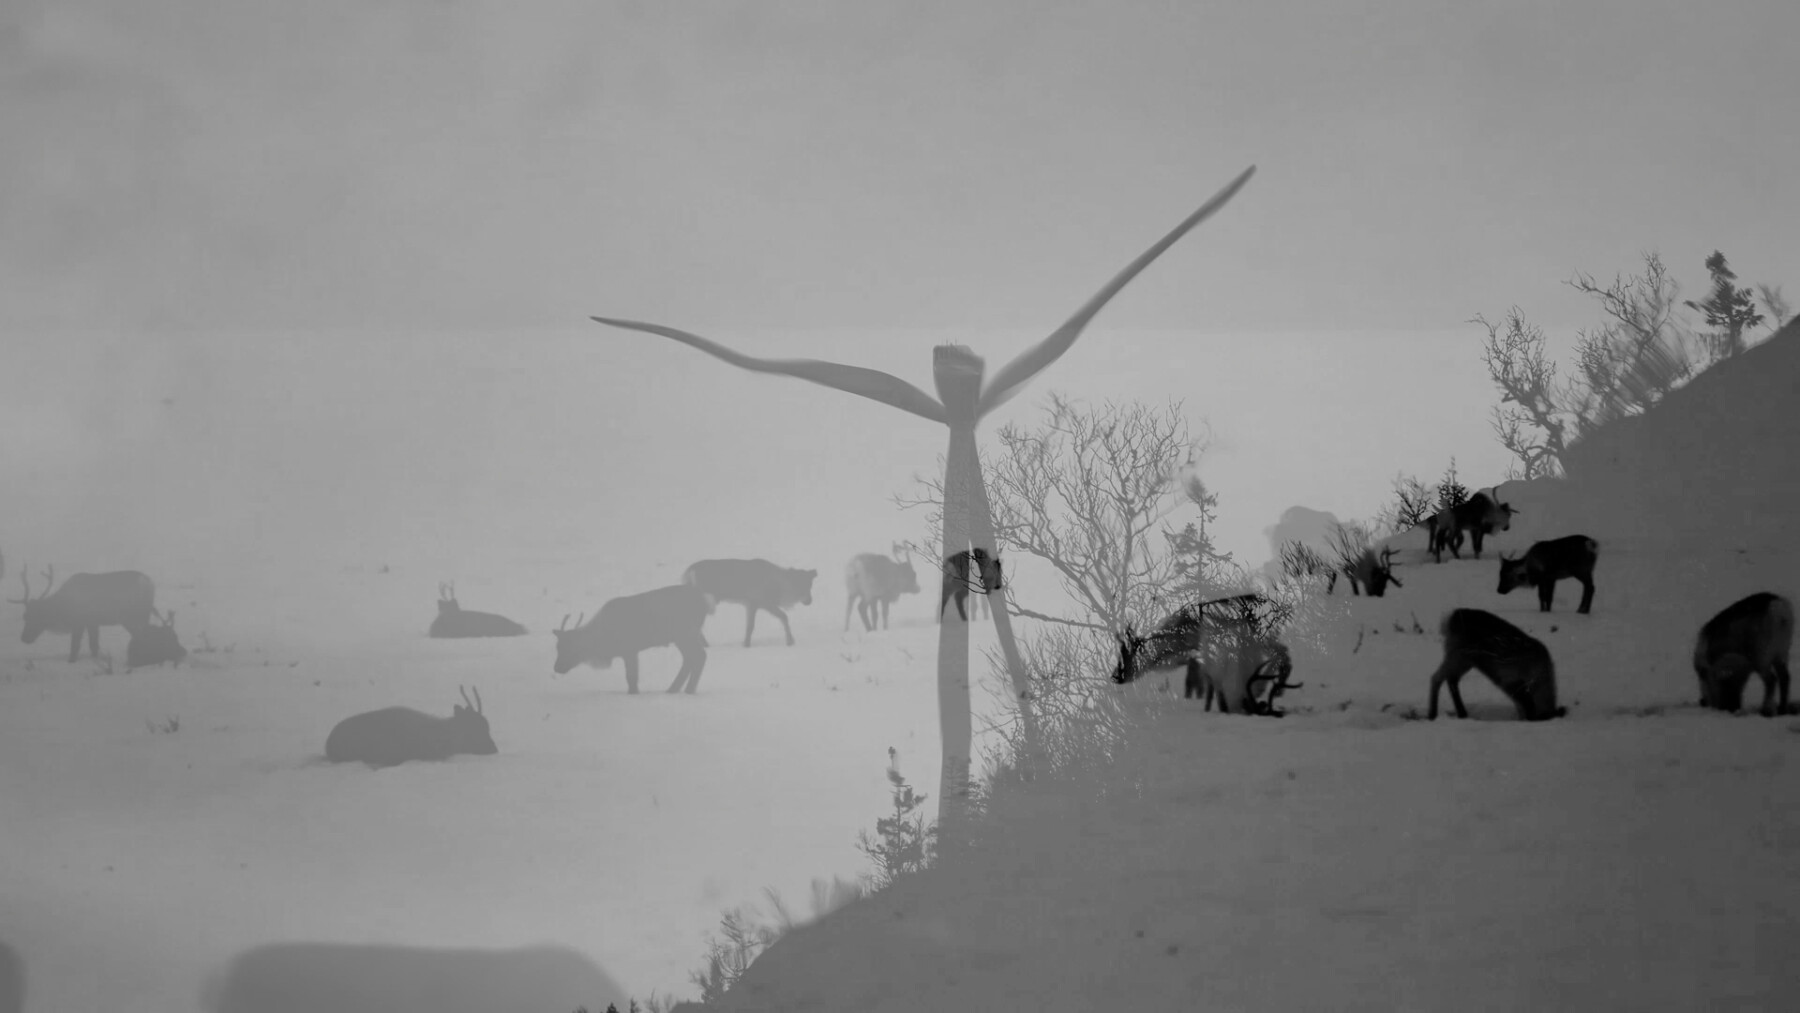 Zwei Schwarz-Weiß-Bilder sind übereinandergelegt: Das eine zeigt grasende Rentiere, das andere eine Windkraftanlage.